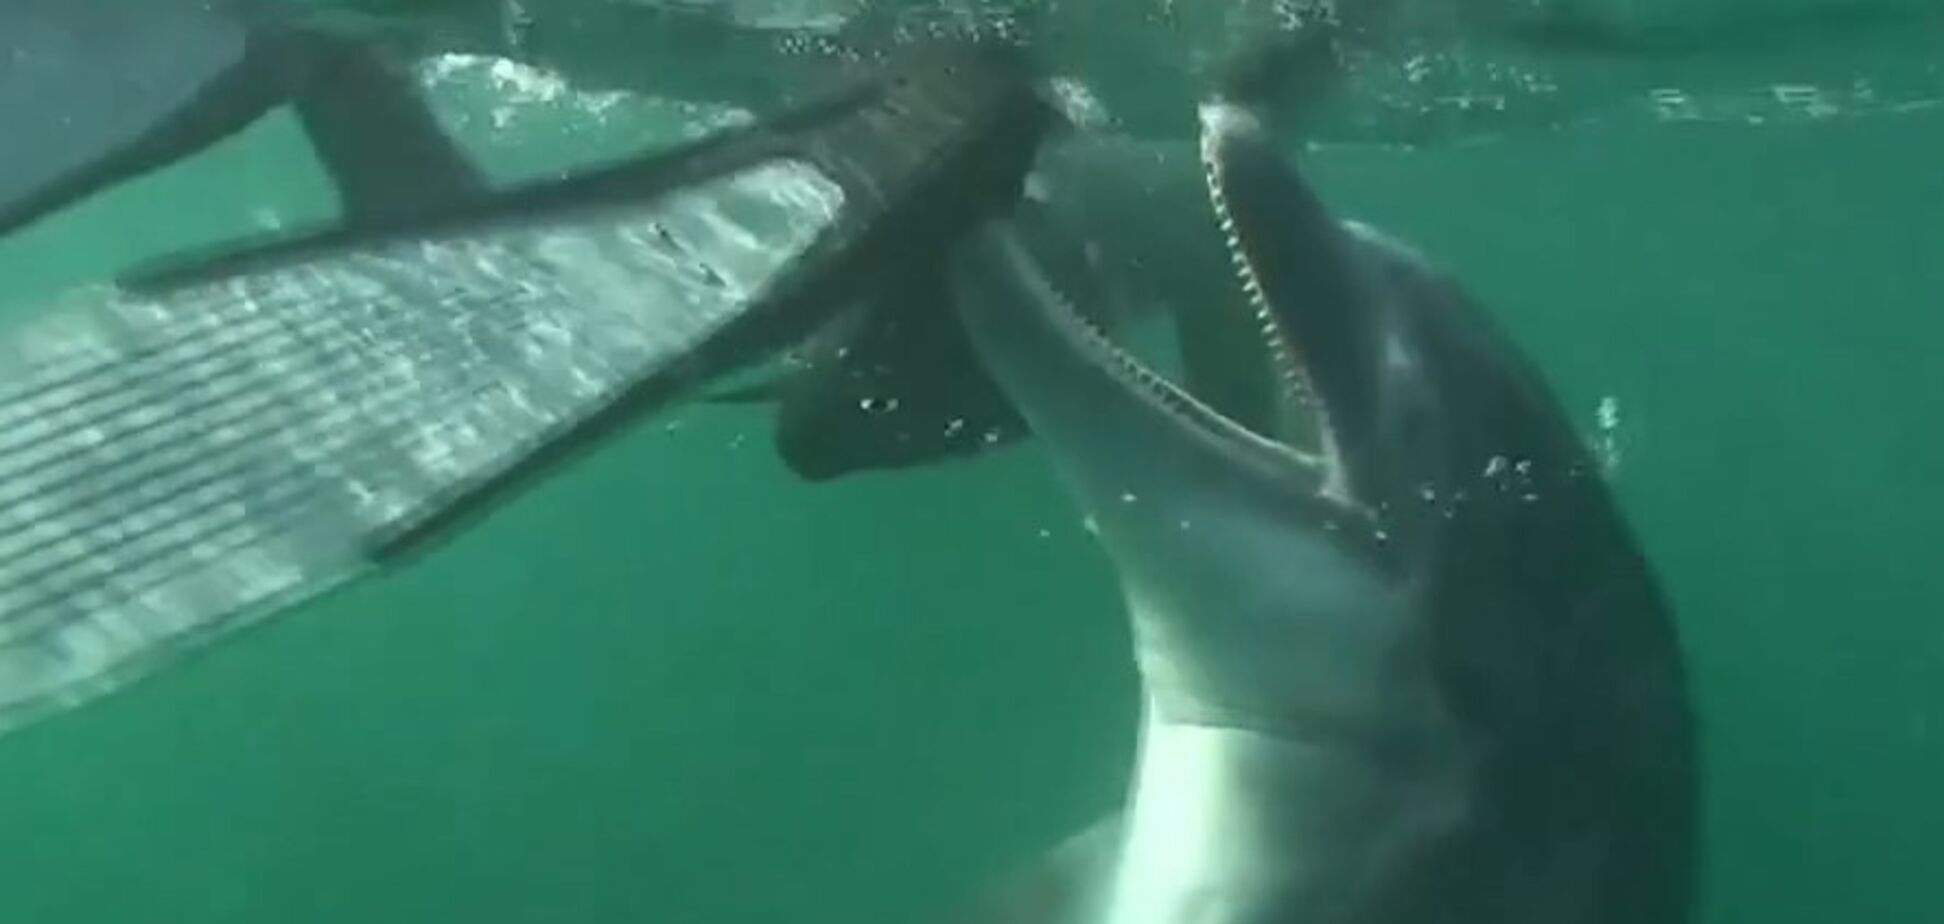 Похотливый дельфин натворил бед во Франции: что случилось